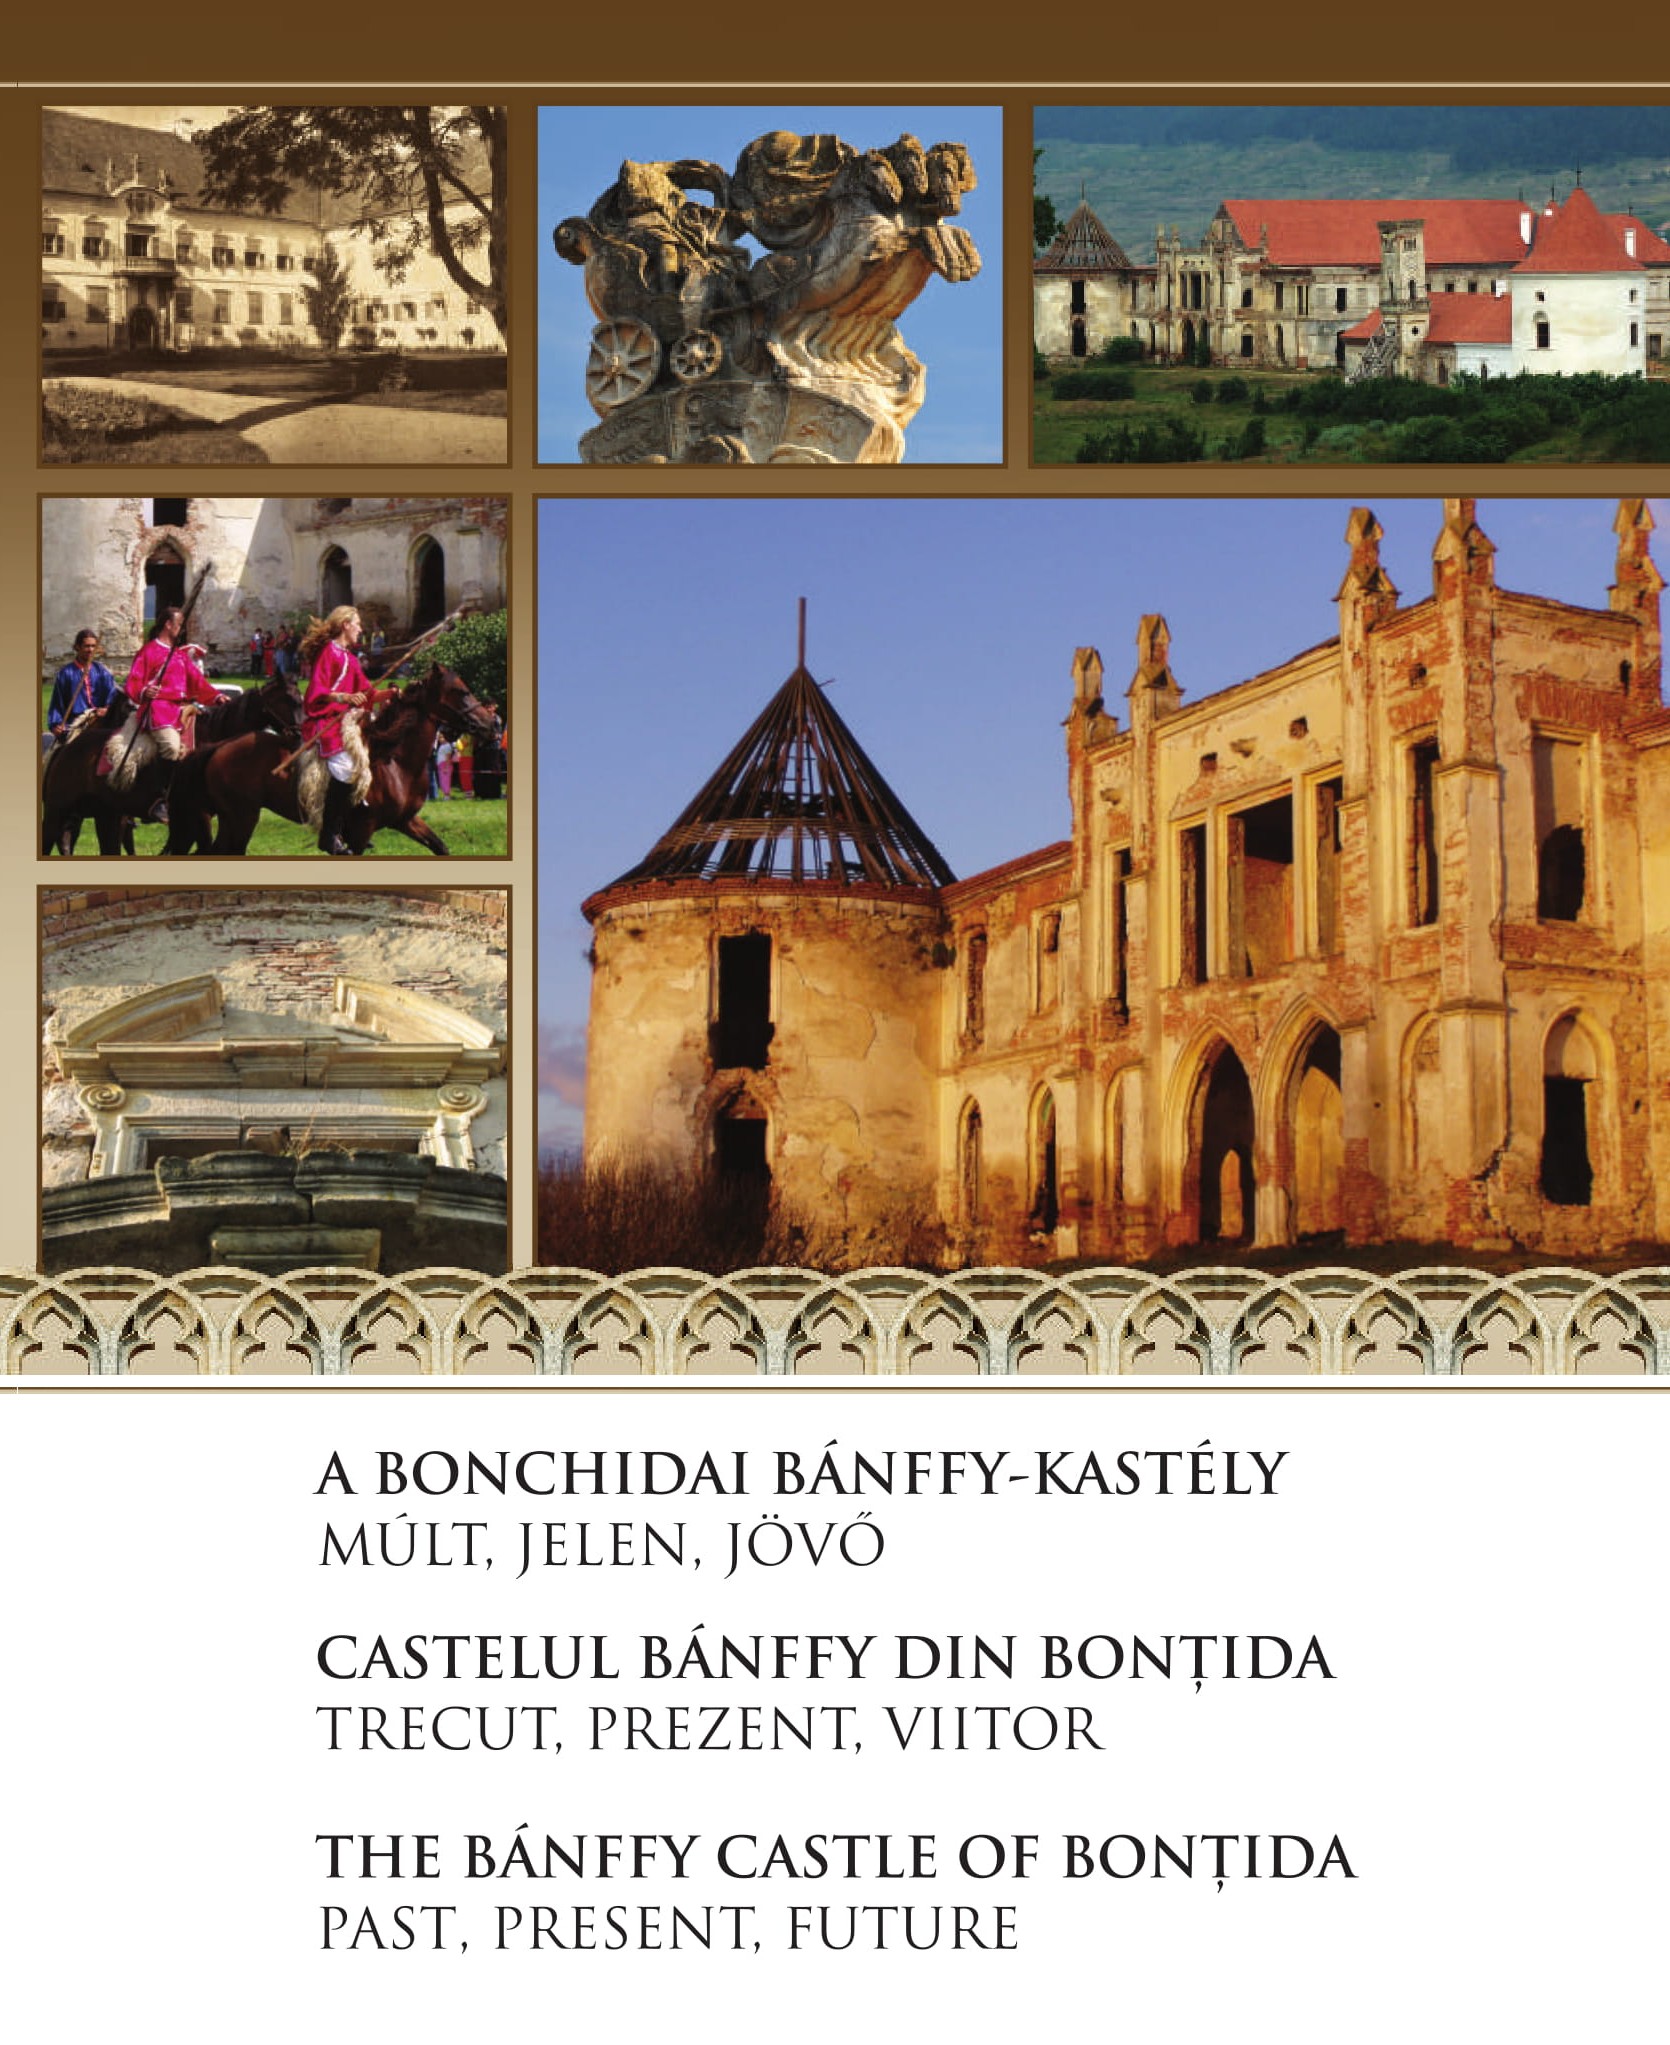 Castelul Bánffy din Bonțida – Trecut, prezent, viitor